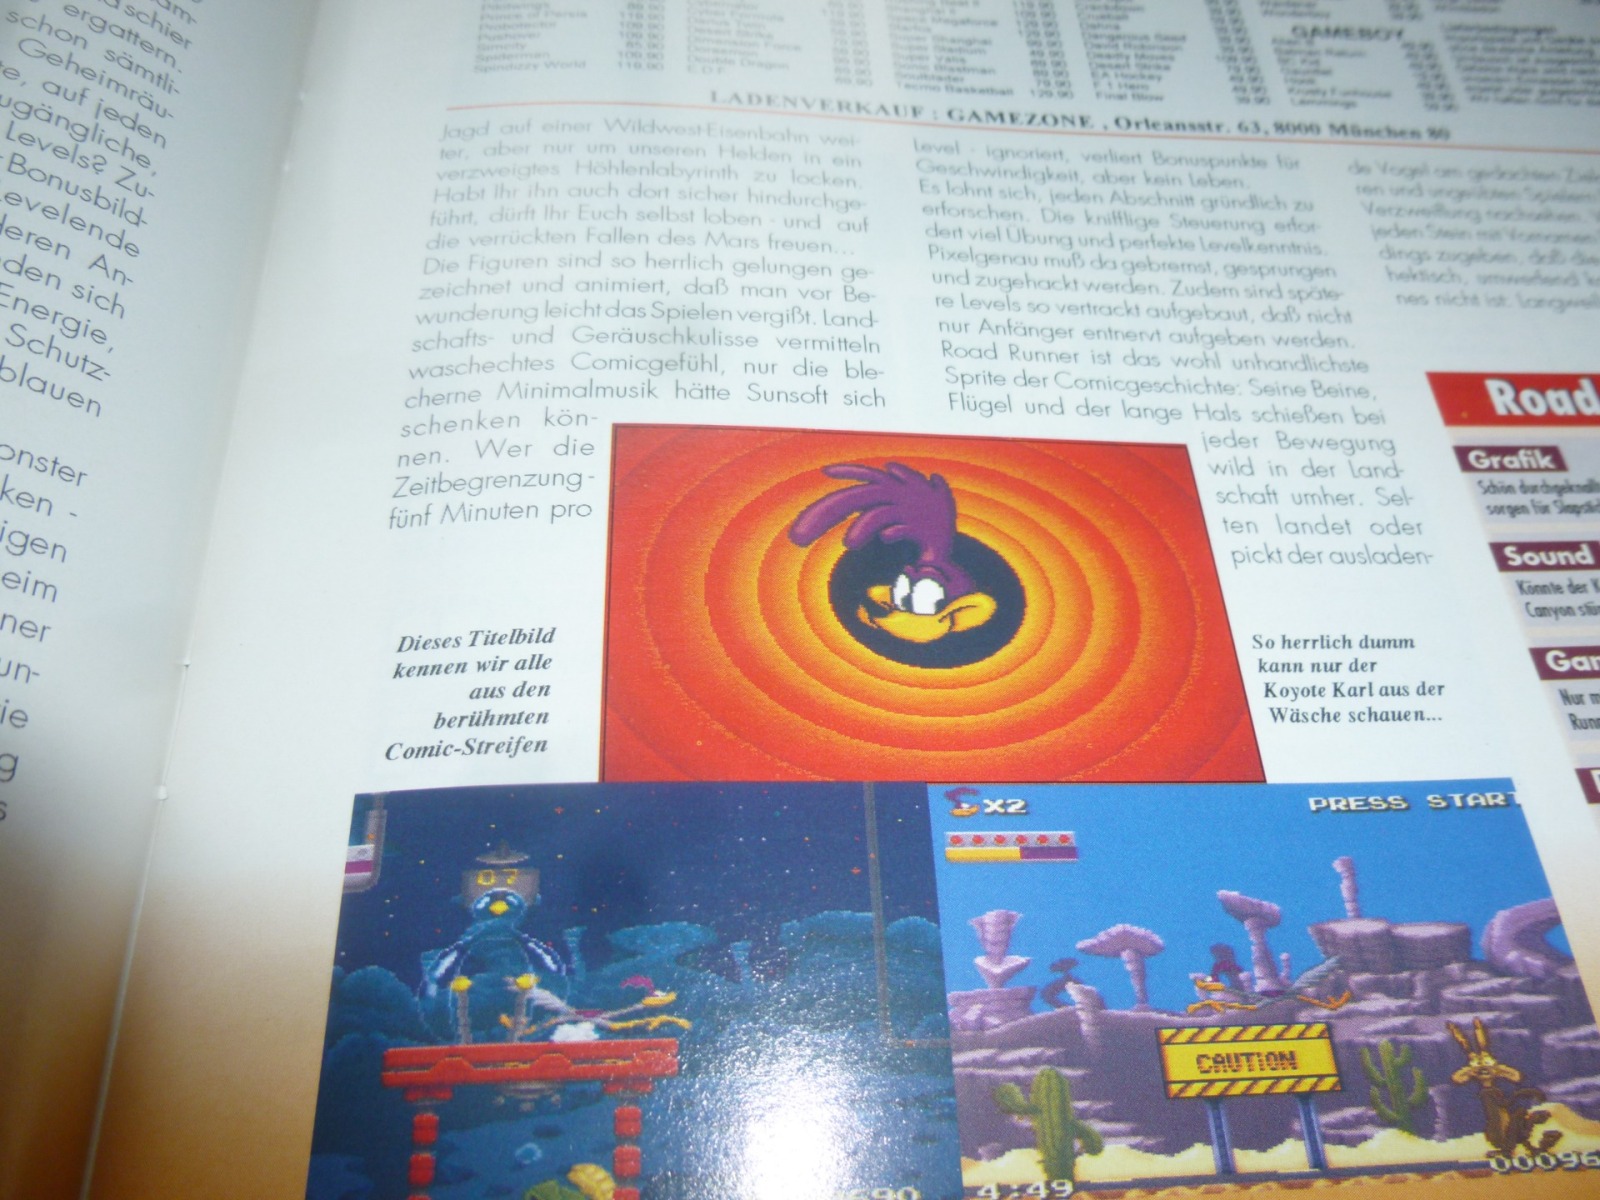 TOTAL Das unabhängige Magazin - 100% Nintendo - Ausgabe 7/93 1993 16